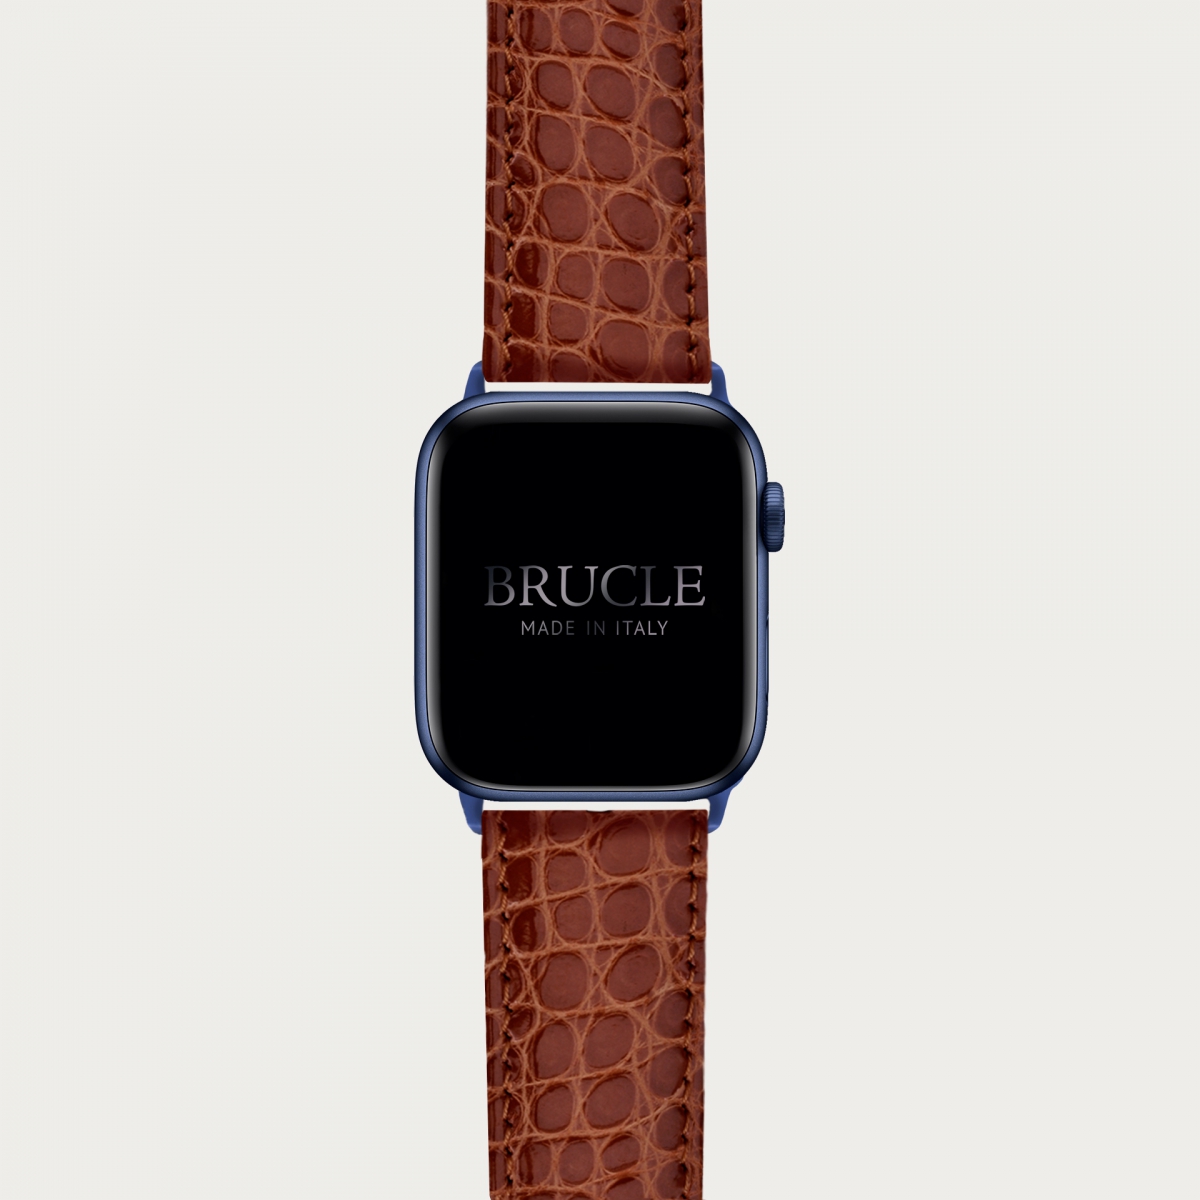 Alligator Armband kompatibel mit Apple Watch / Samsung Smartwatch, Gold-braun